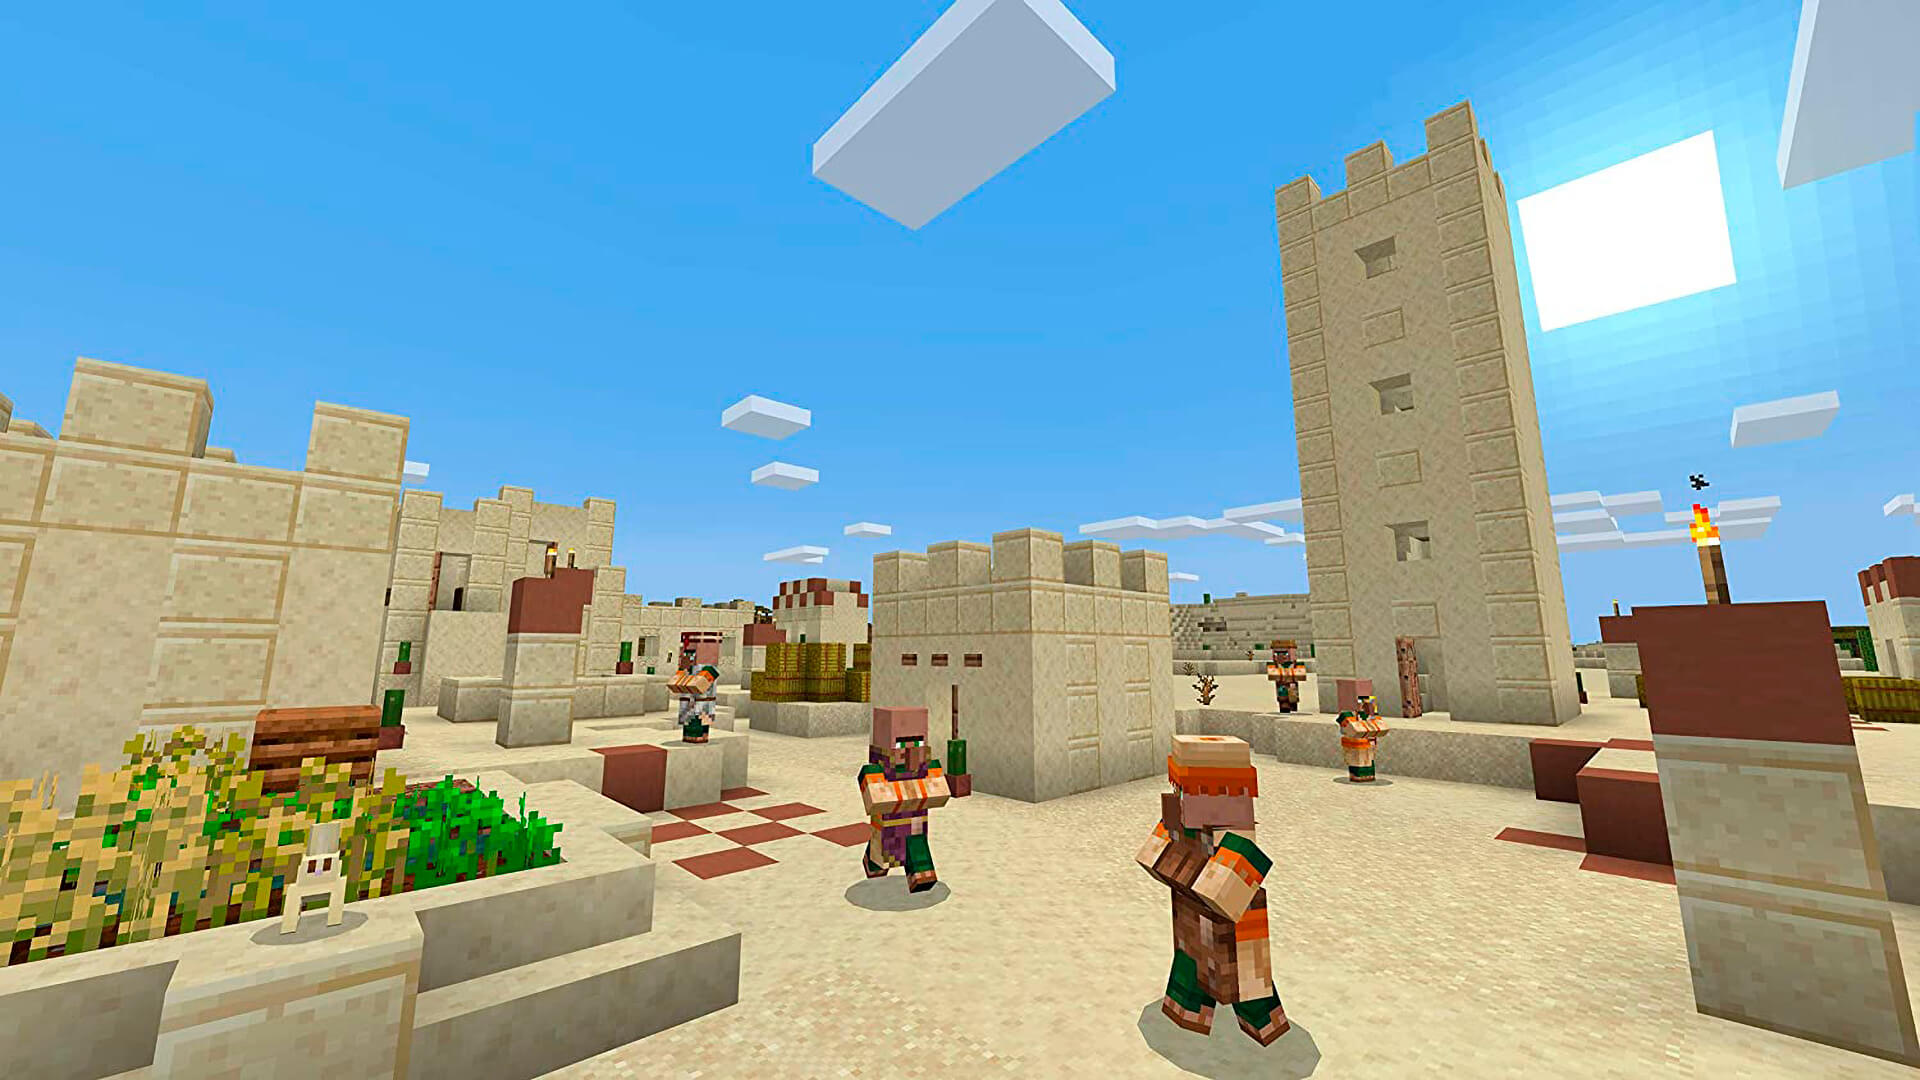 Jogo Minecraft VR para PS4 no Paraguai - Atacado Games - Paraguay